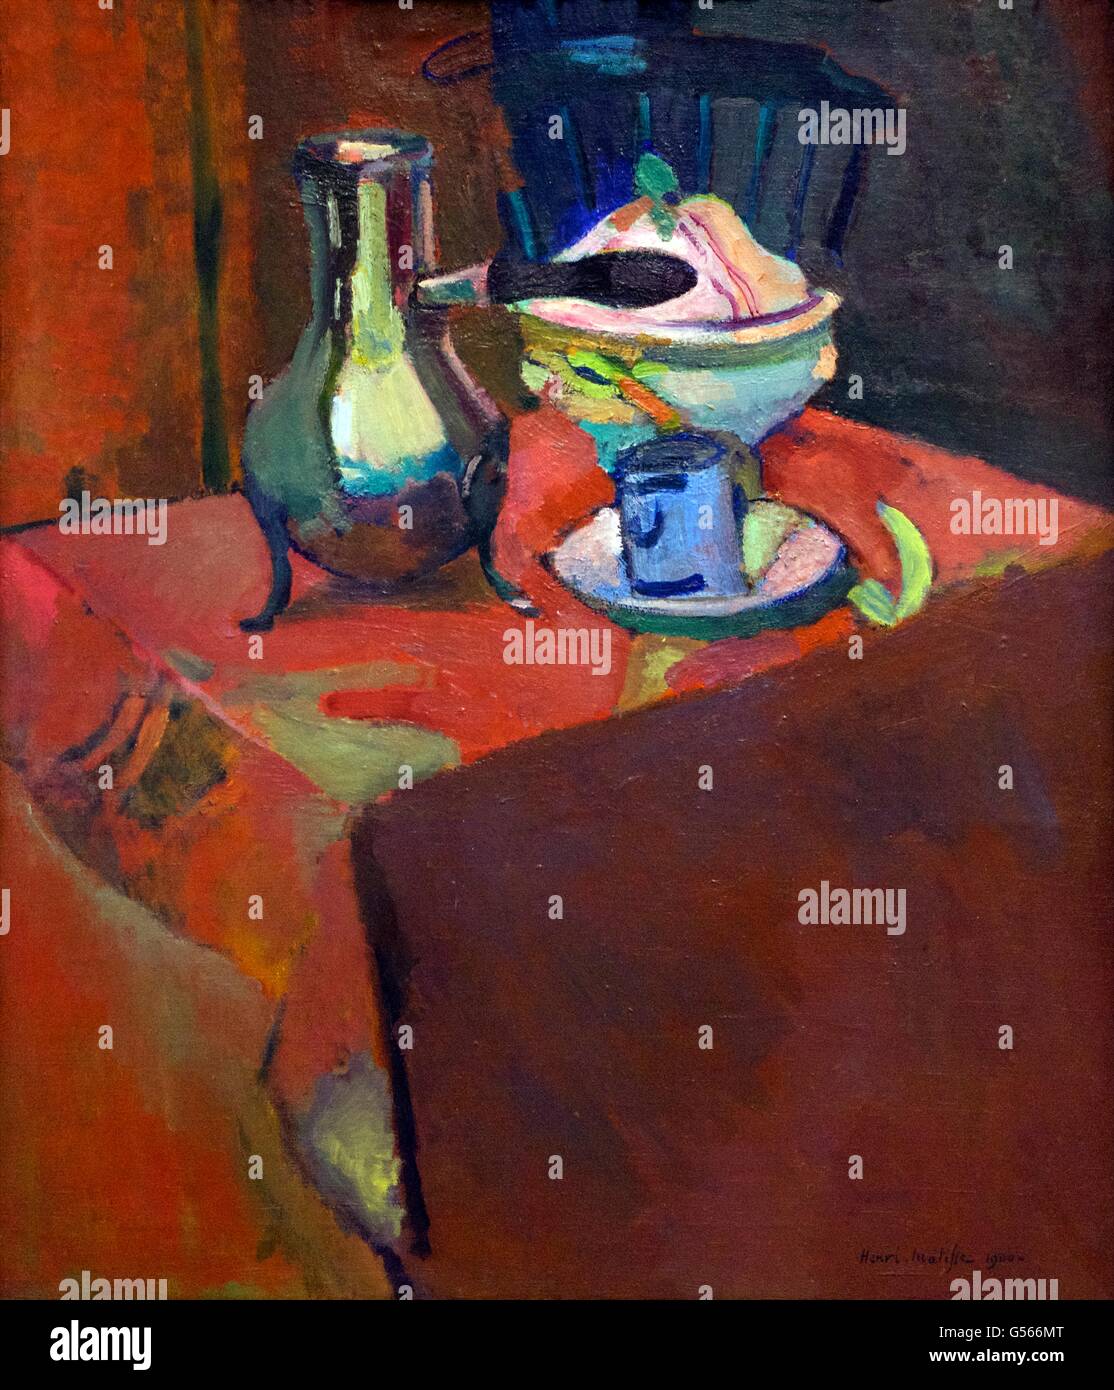 La vaisselle de table sur une table, par Henri Matisse, 1900, Musée de l'Ermitage, Saint-Pétersbourg, Russie Banque D'Images